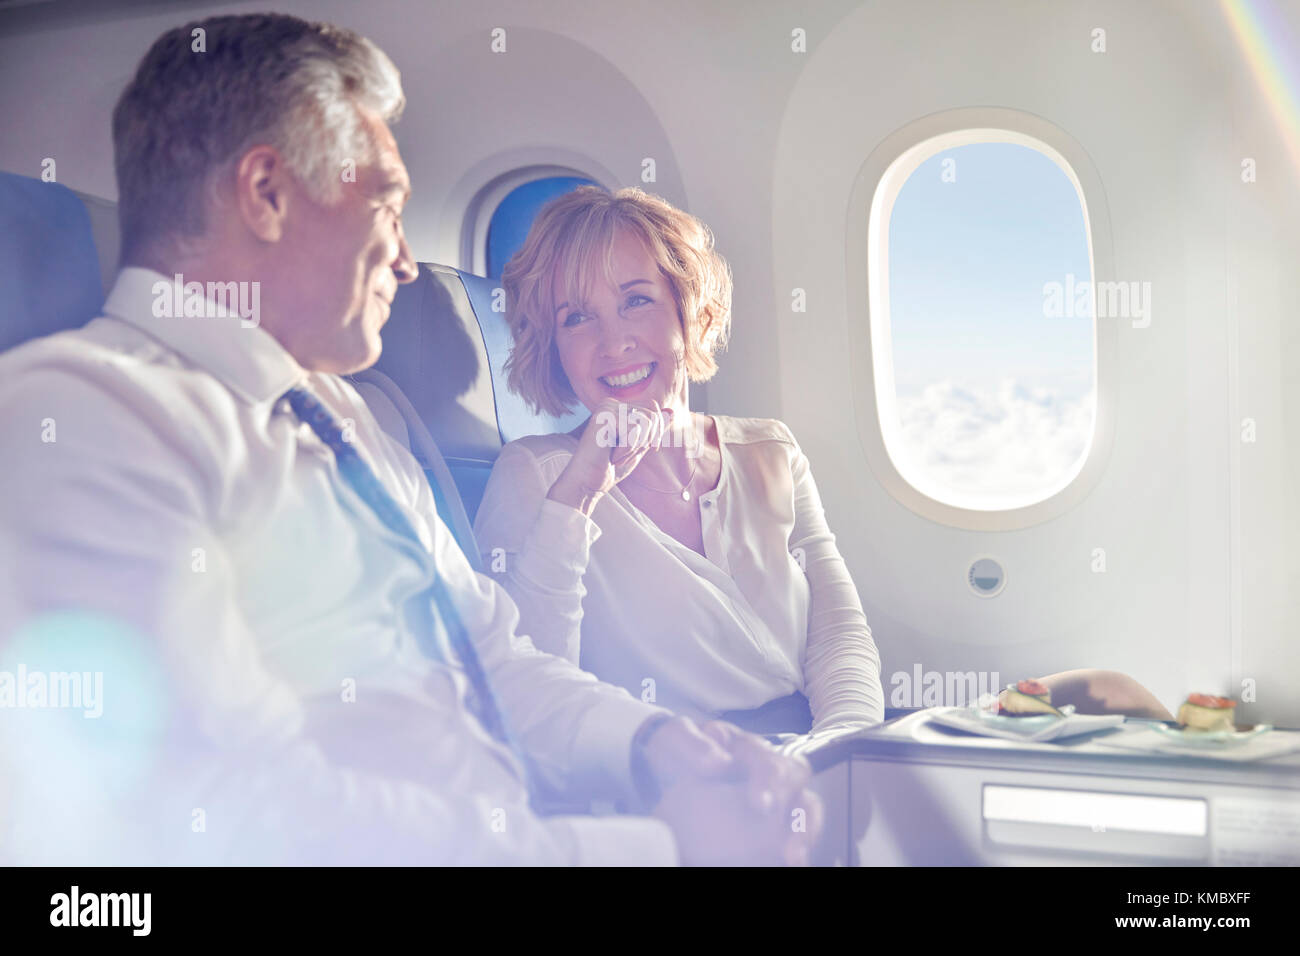 Lächelndes reifes Paar, das in erster Klasse isst und spricht Flugzeug Stockfoto